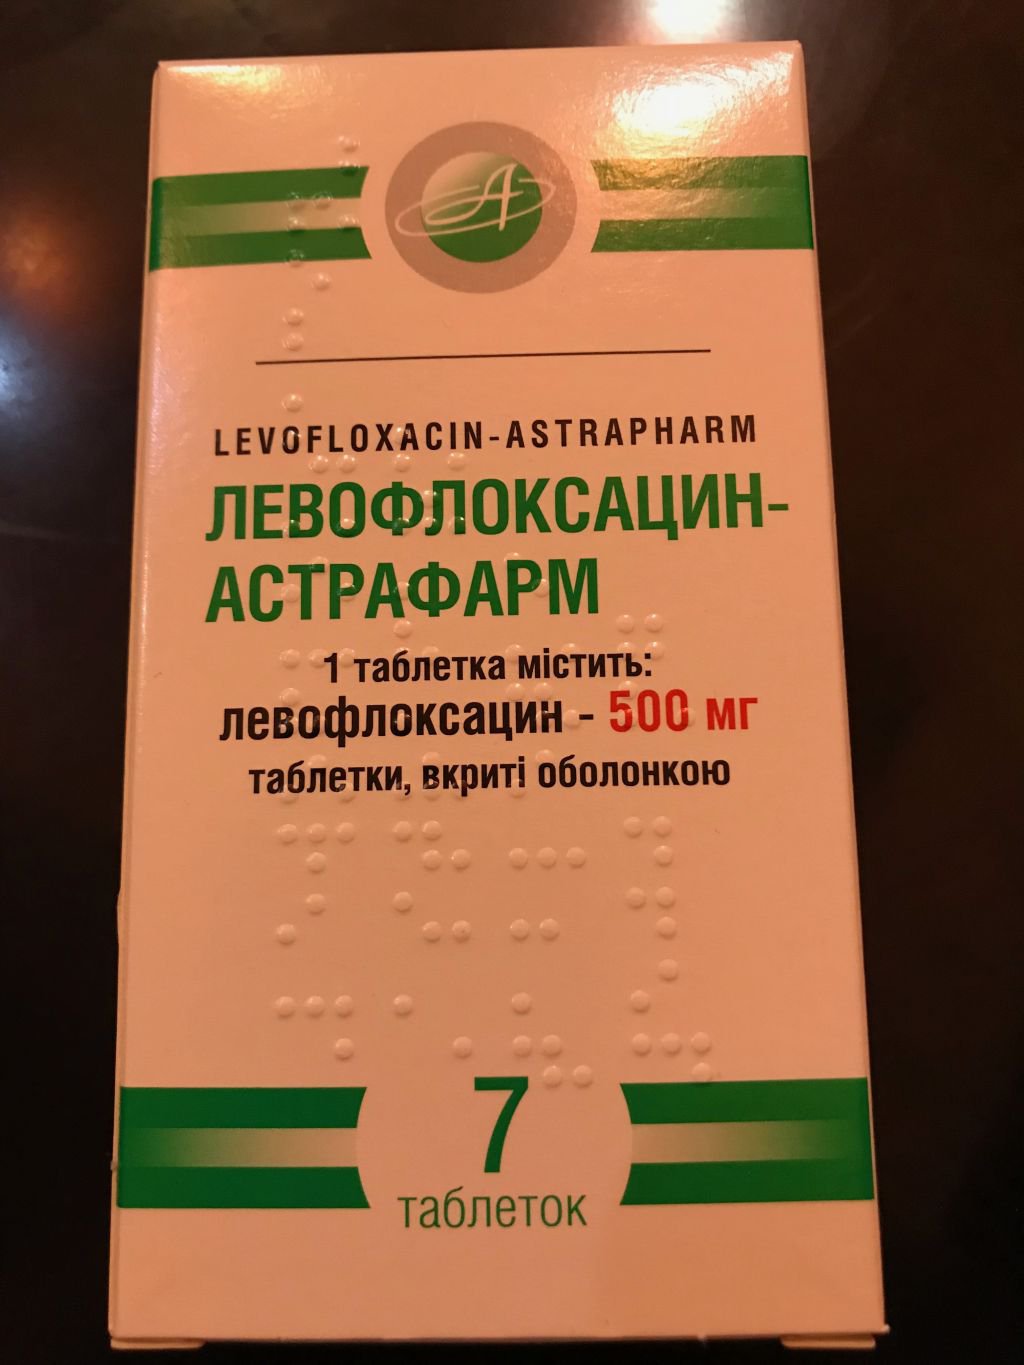 590 АБИФЛОКС® - Levofloxacin